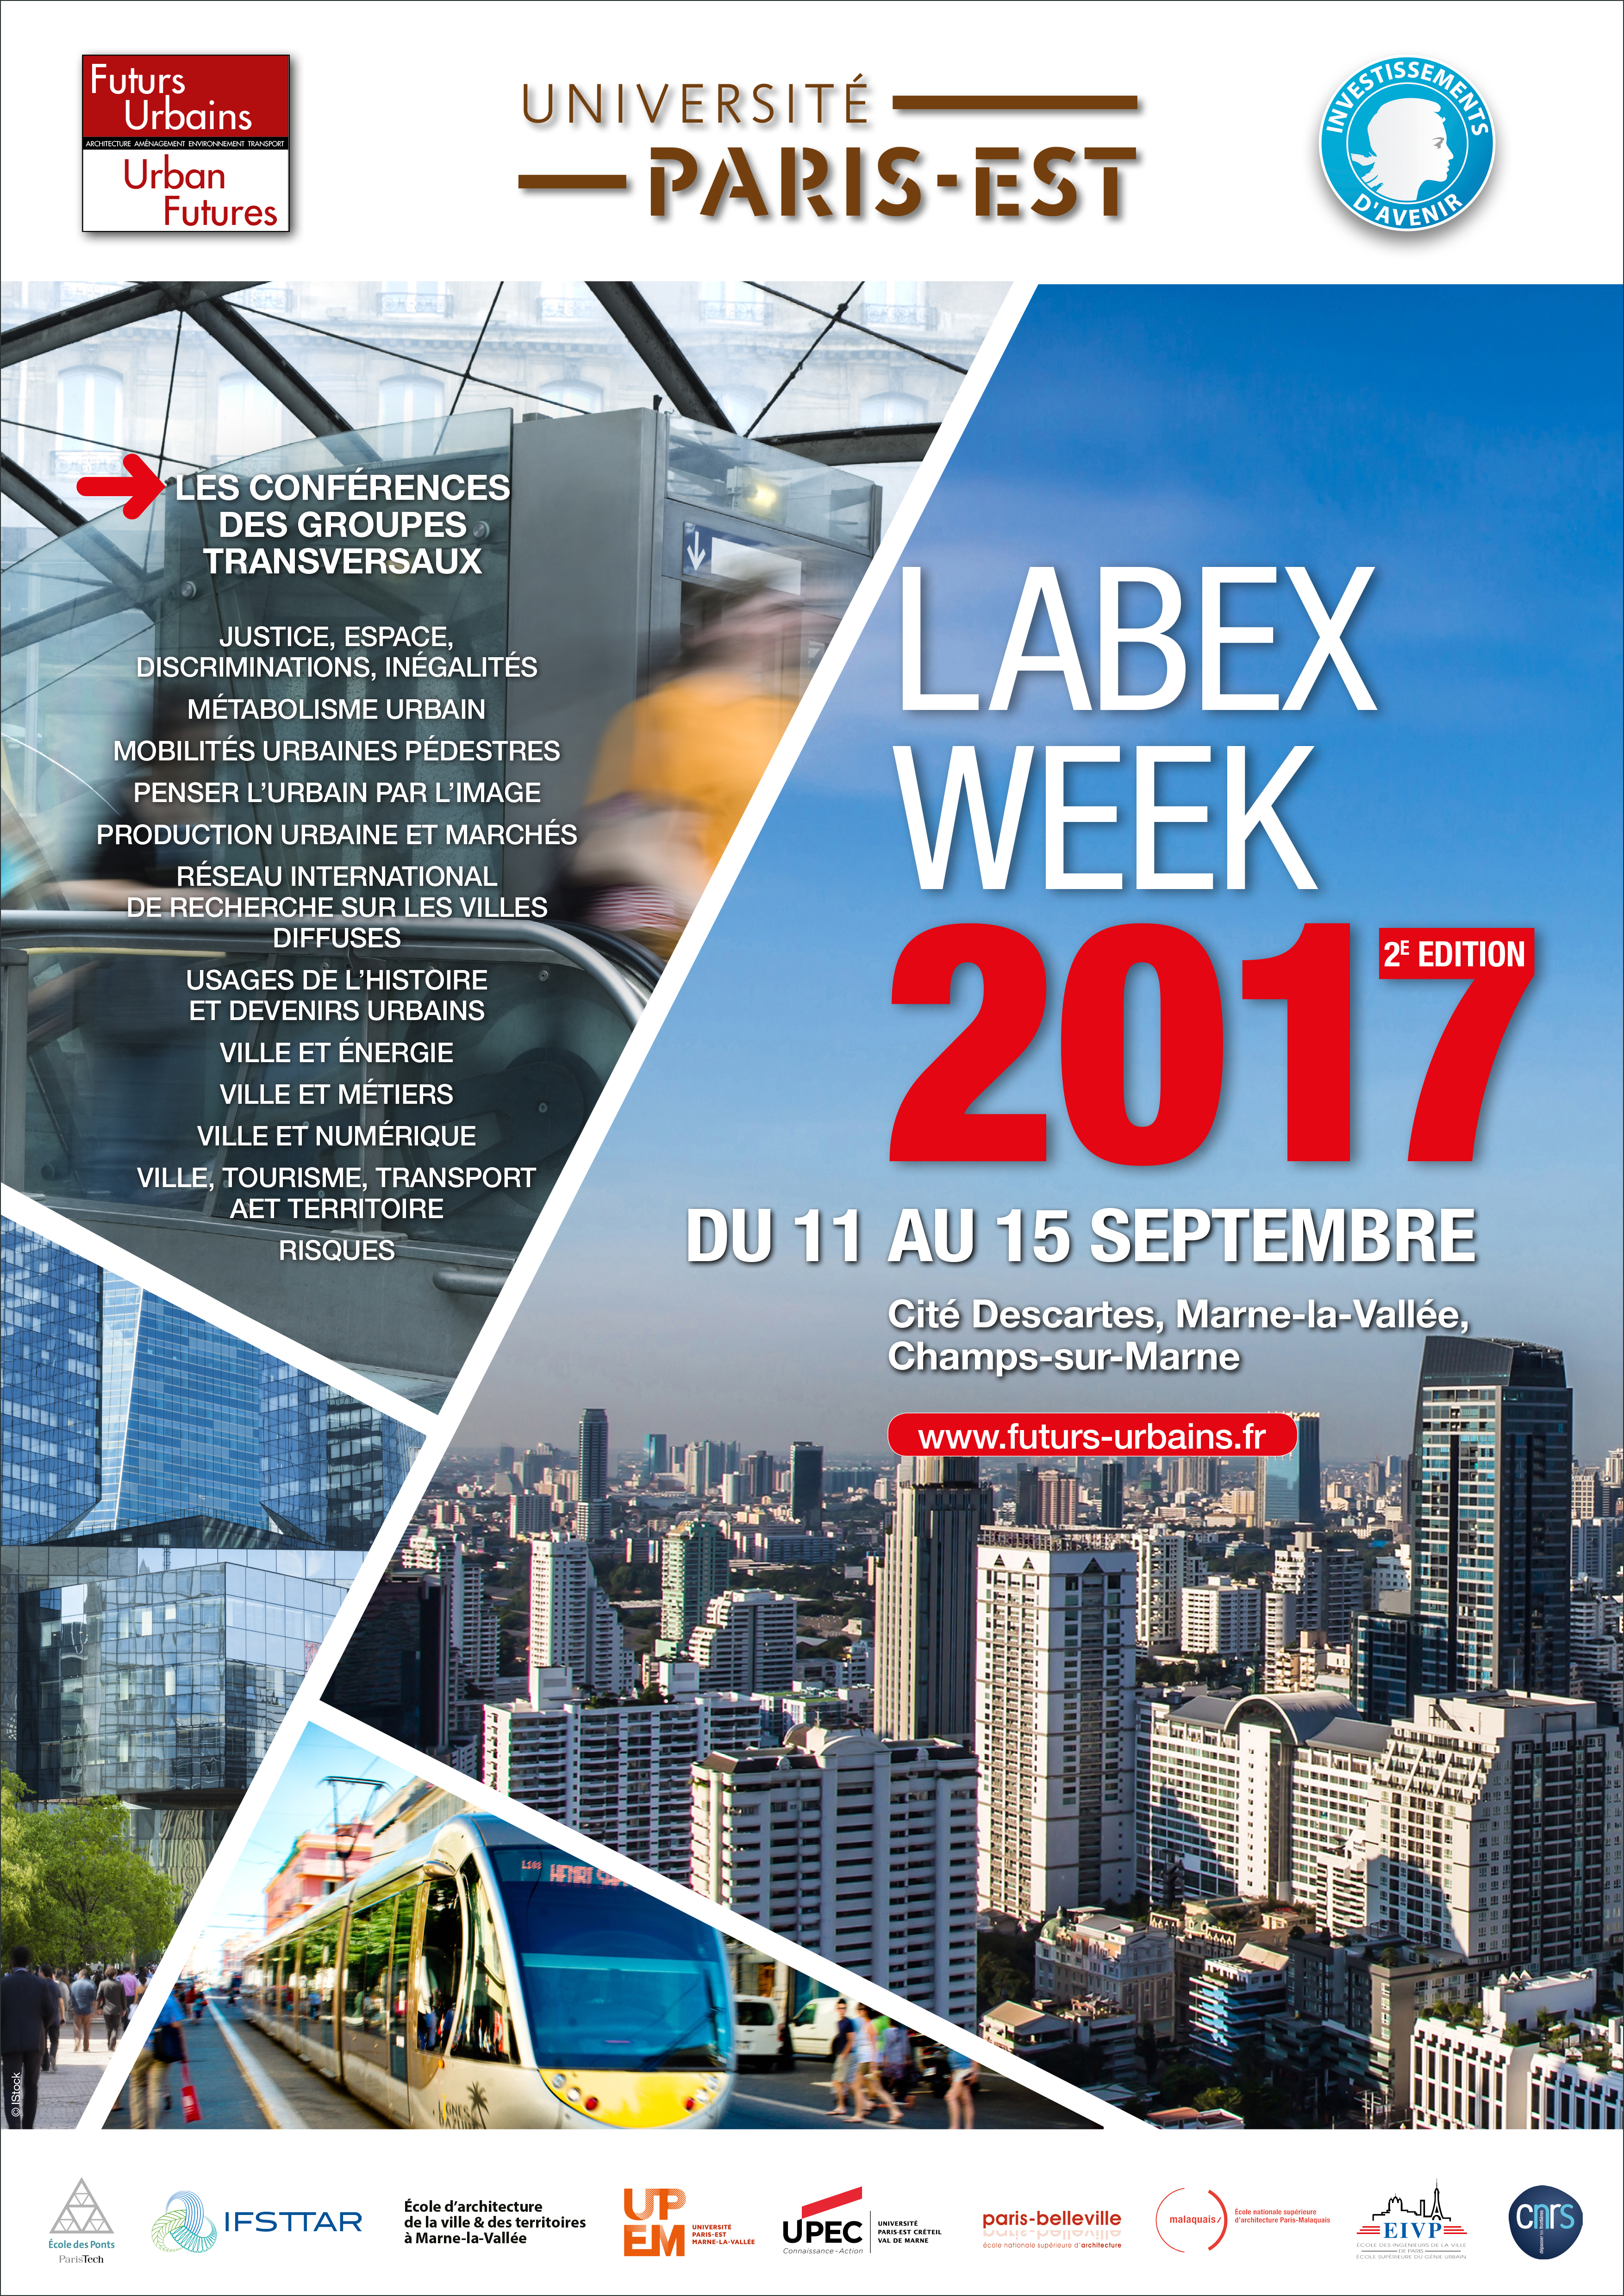 LABEX WEEK 2017